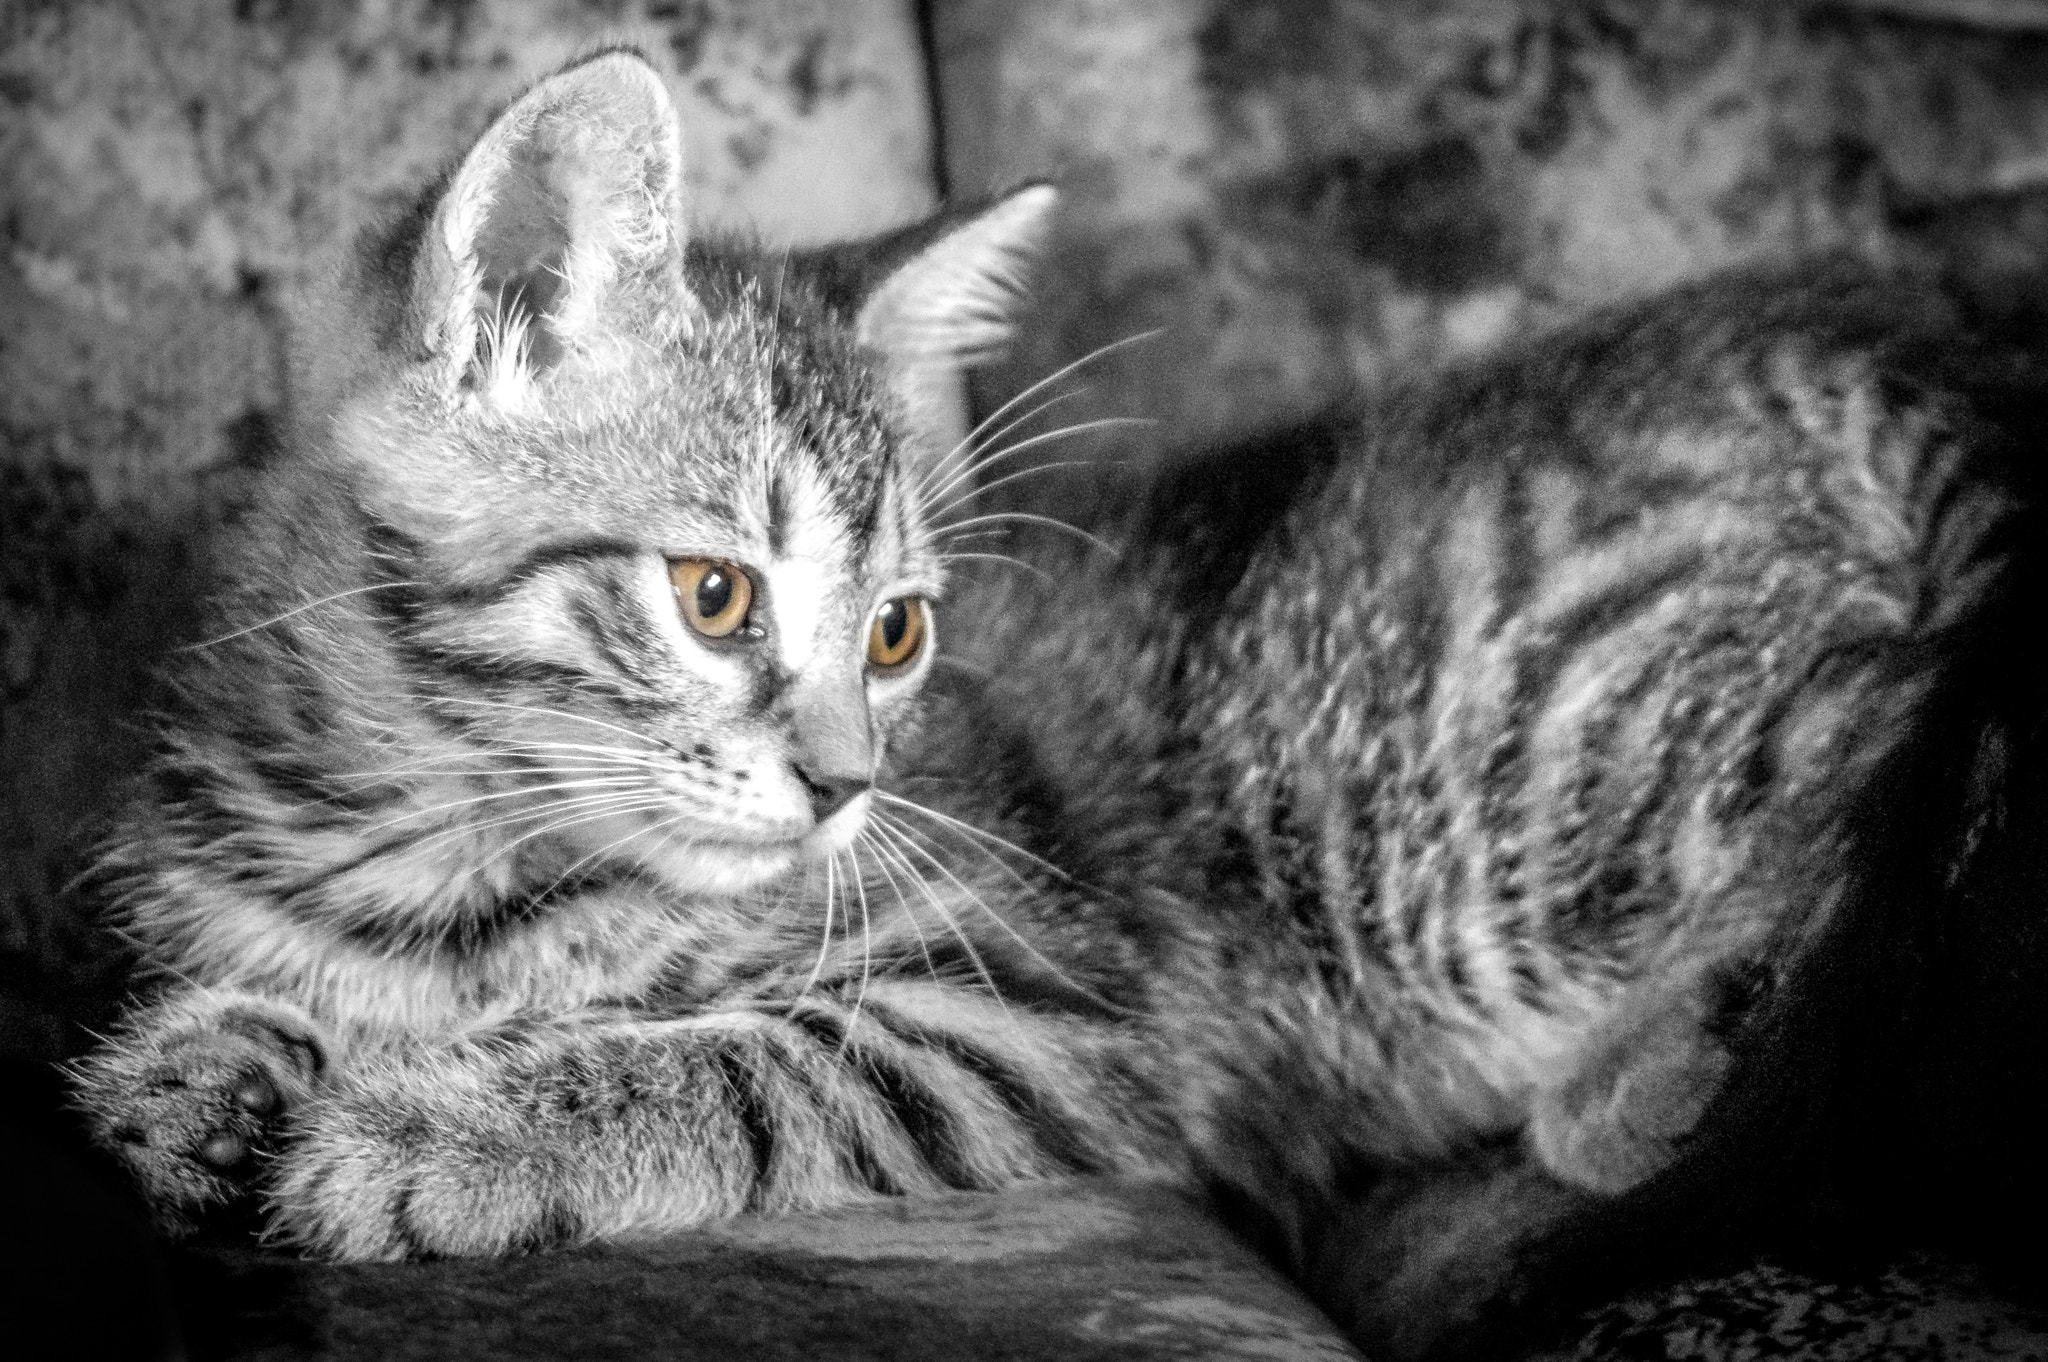 Pentax K-3 sample photo. Kitten photography